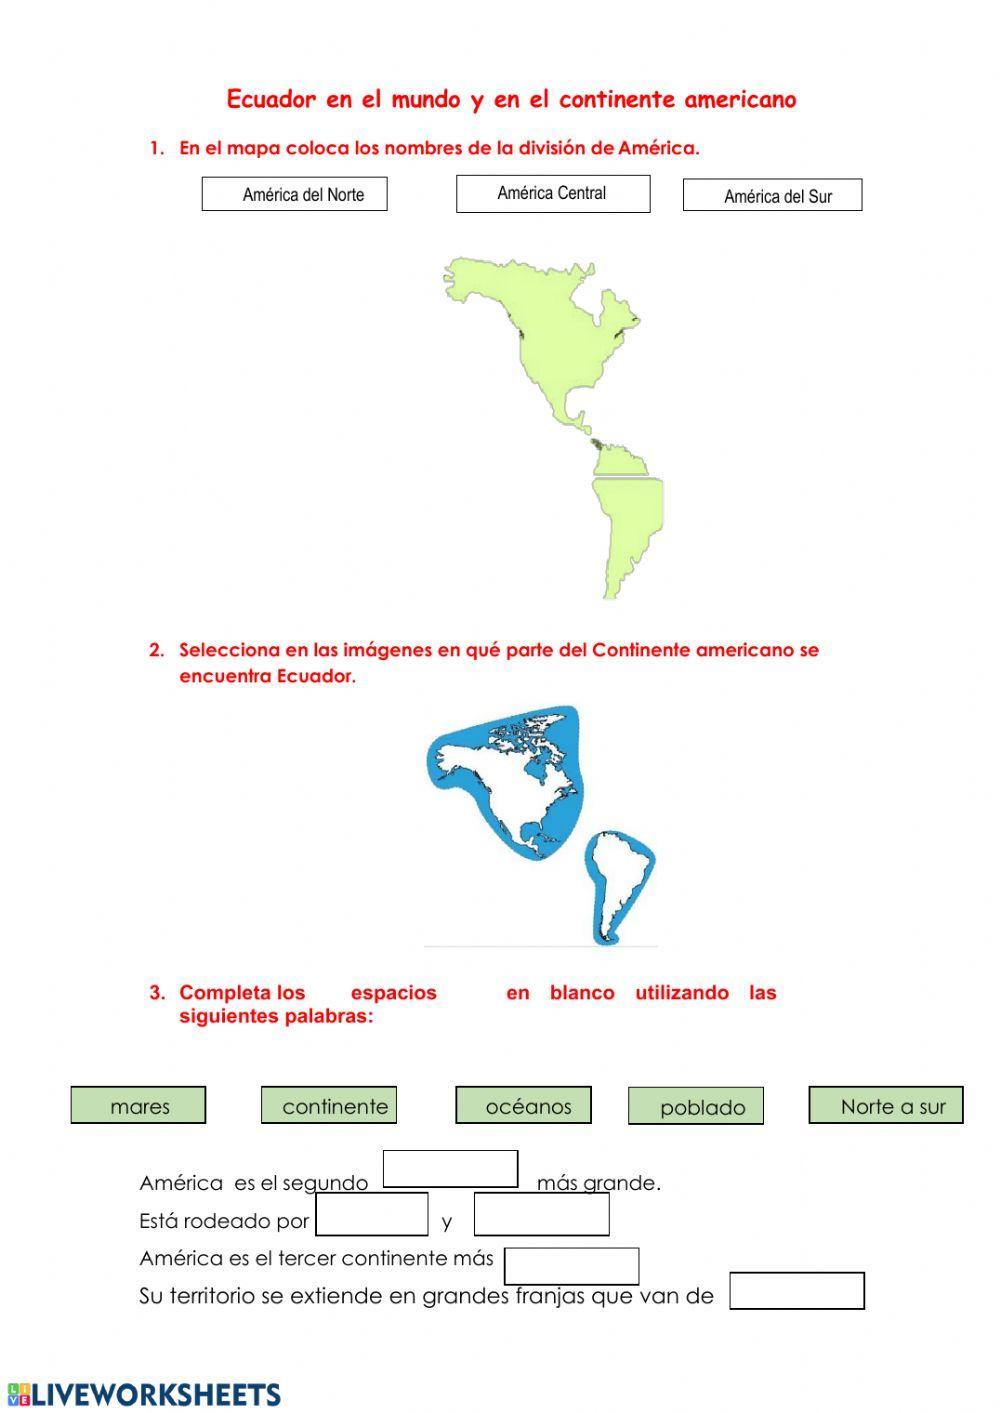 Ecuador en el continente américano